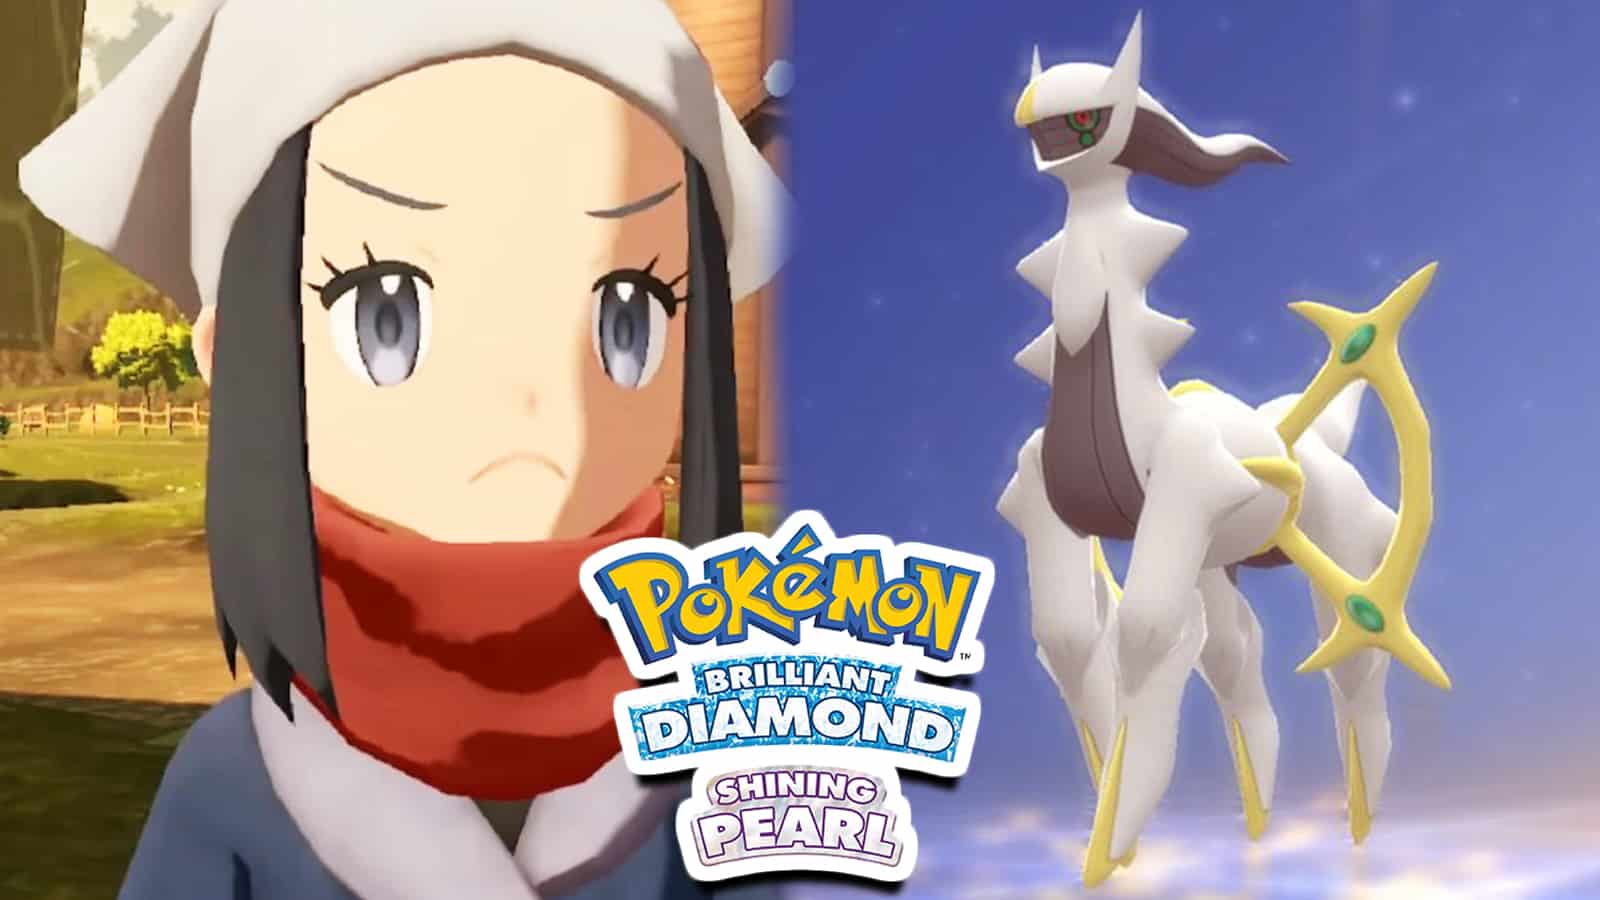 How to Capture Arceus in Pokémon Diamond or Pokémon Pearl